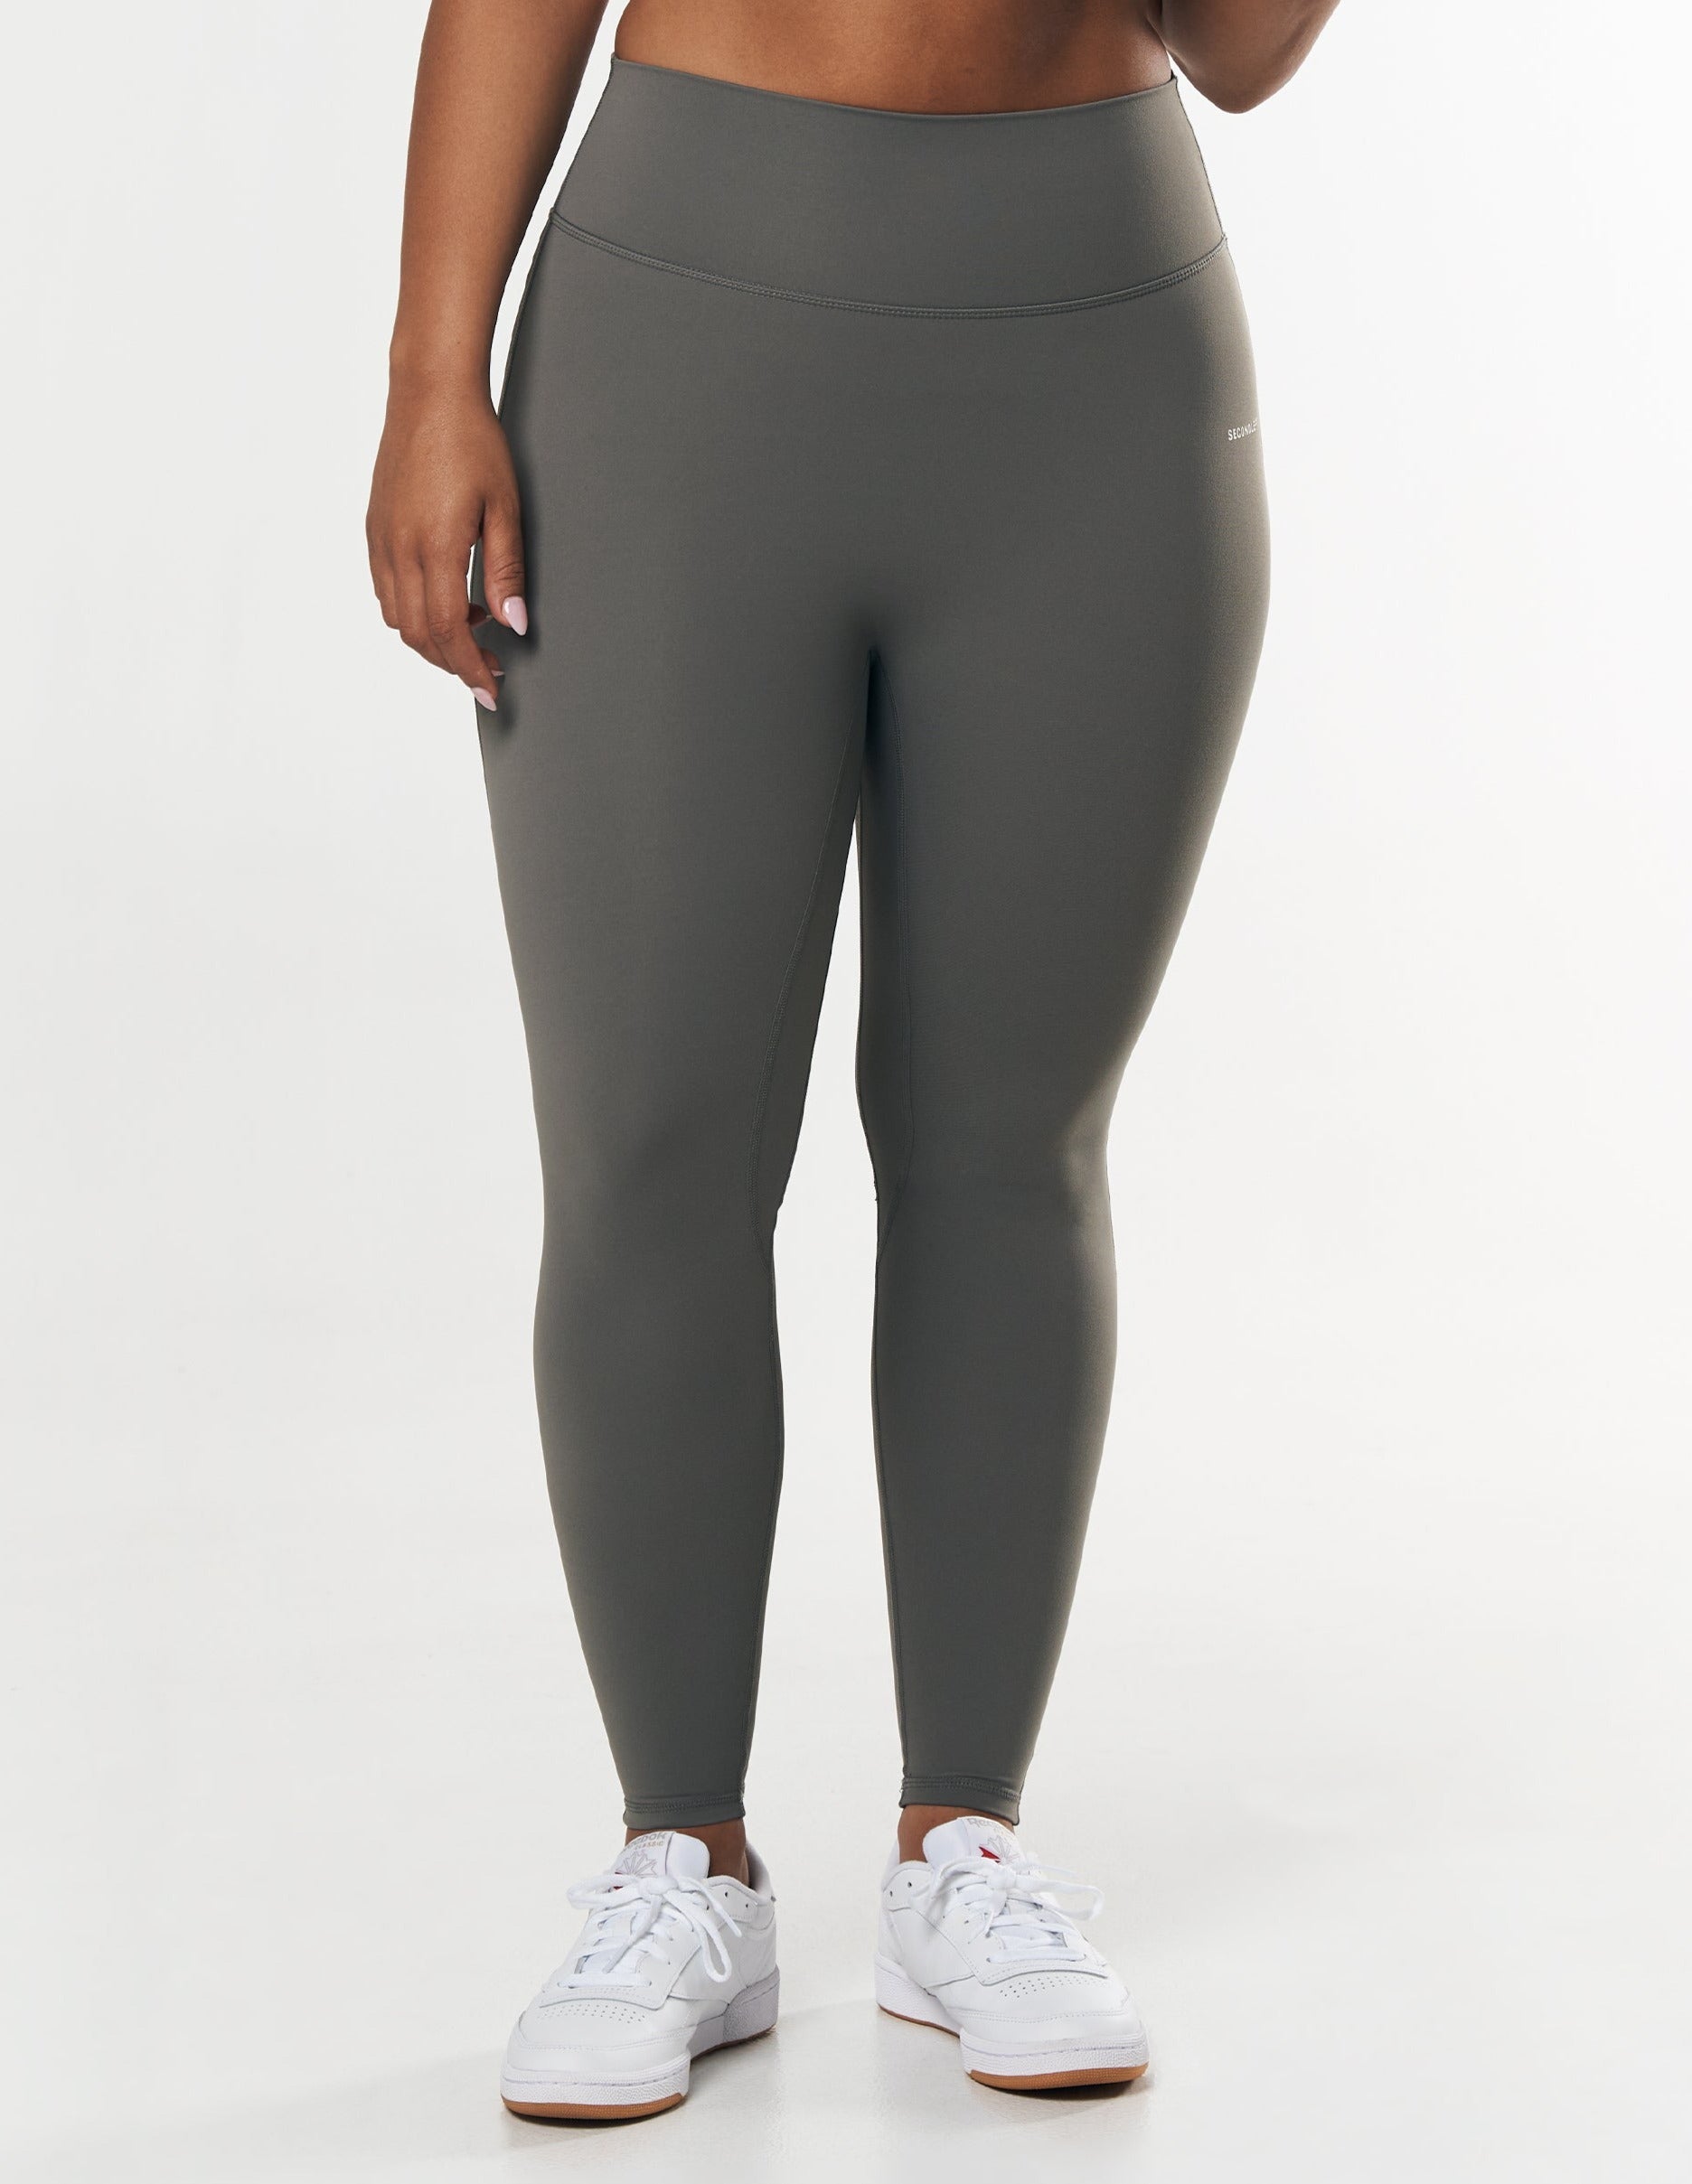 Grey Nike leggings lace thong VTL ball drainer - Spandex, Leggings & Yoga  Pants - Forum